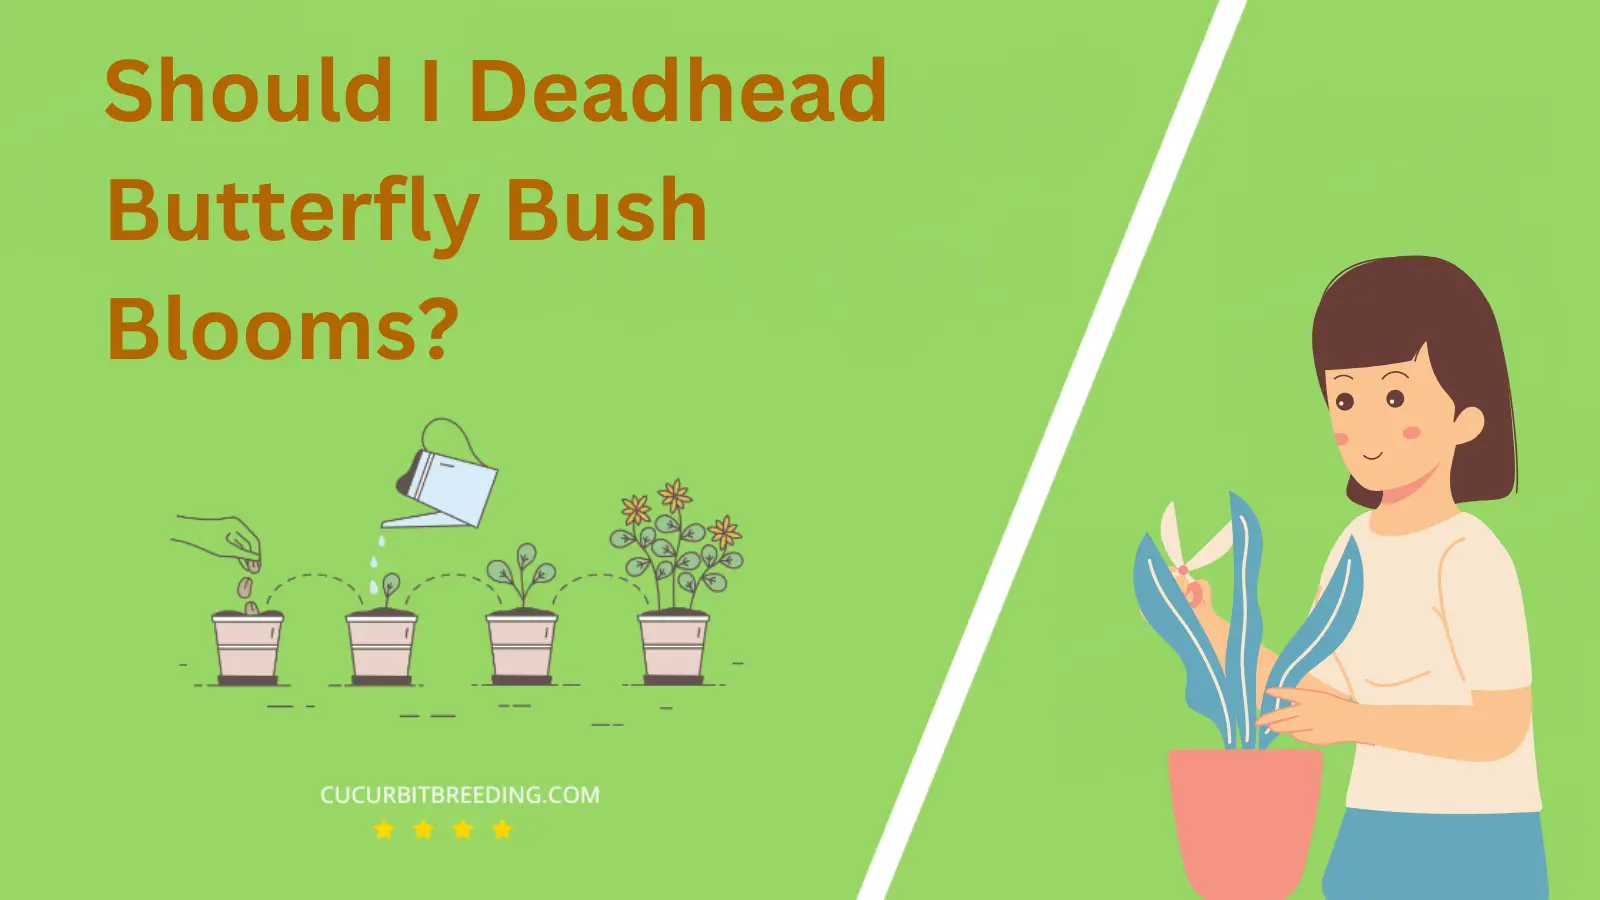 Should I Deadhead Butterfly Bush Blooms?